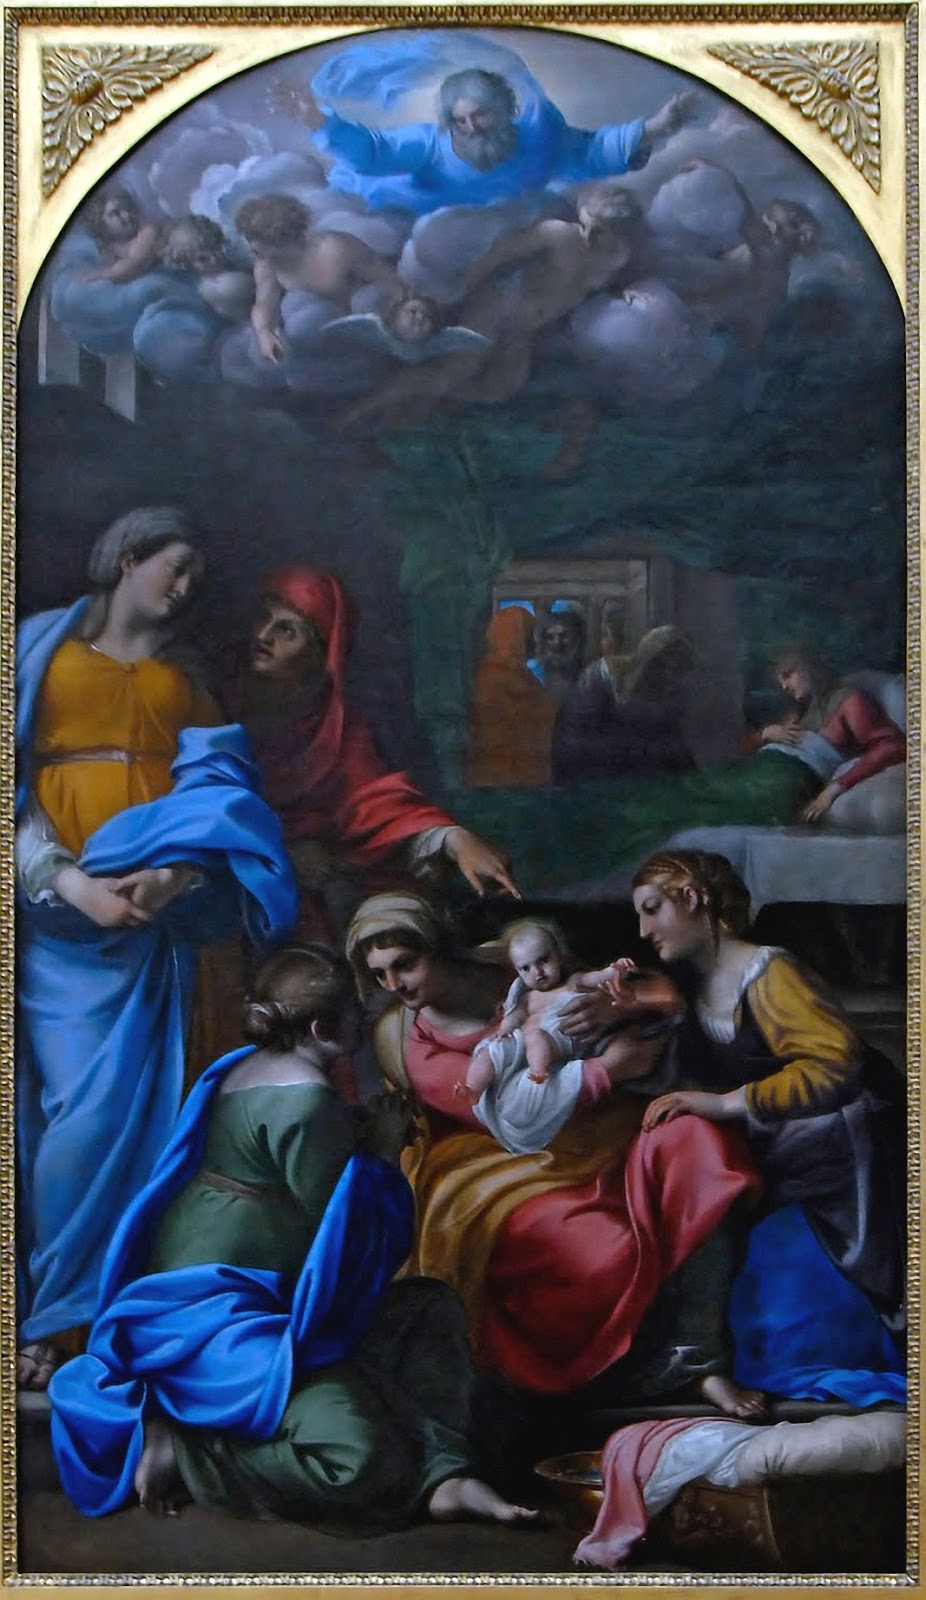 Annibale+Carracci-1560-1609 (7).jpg